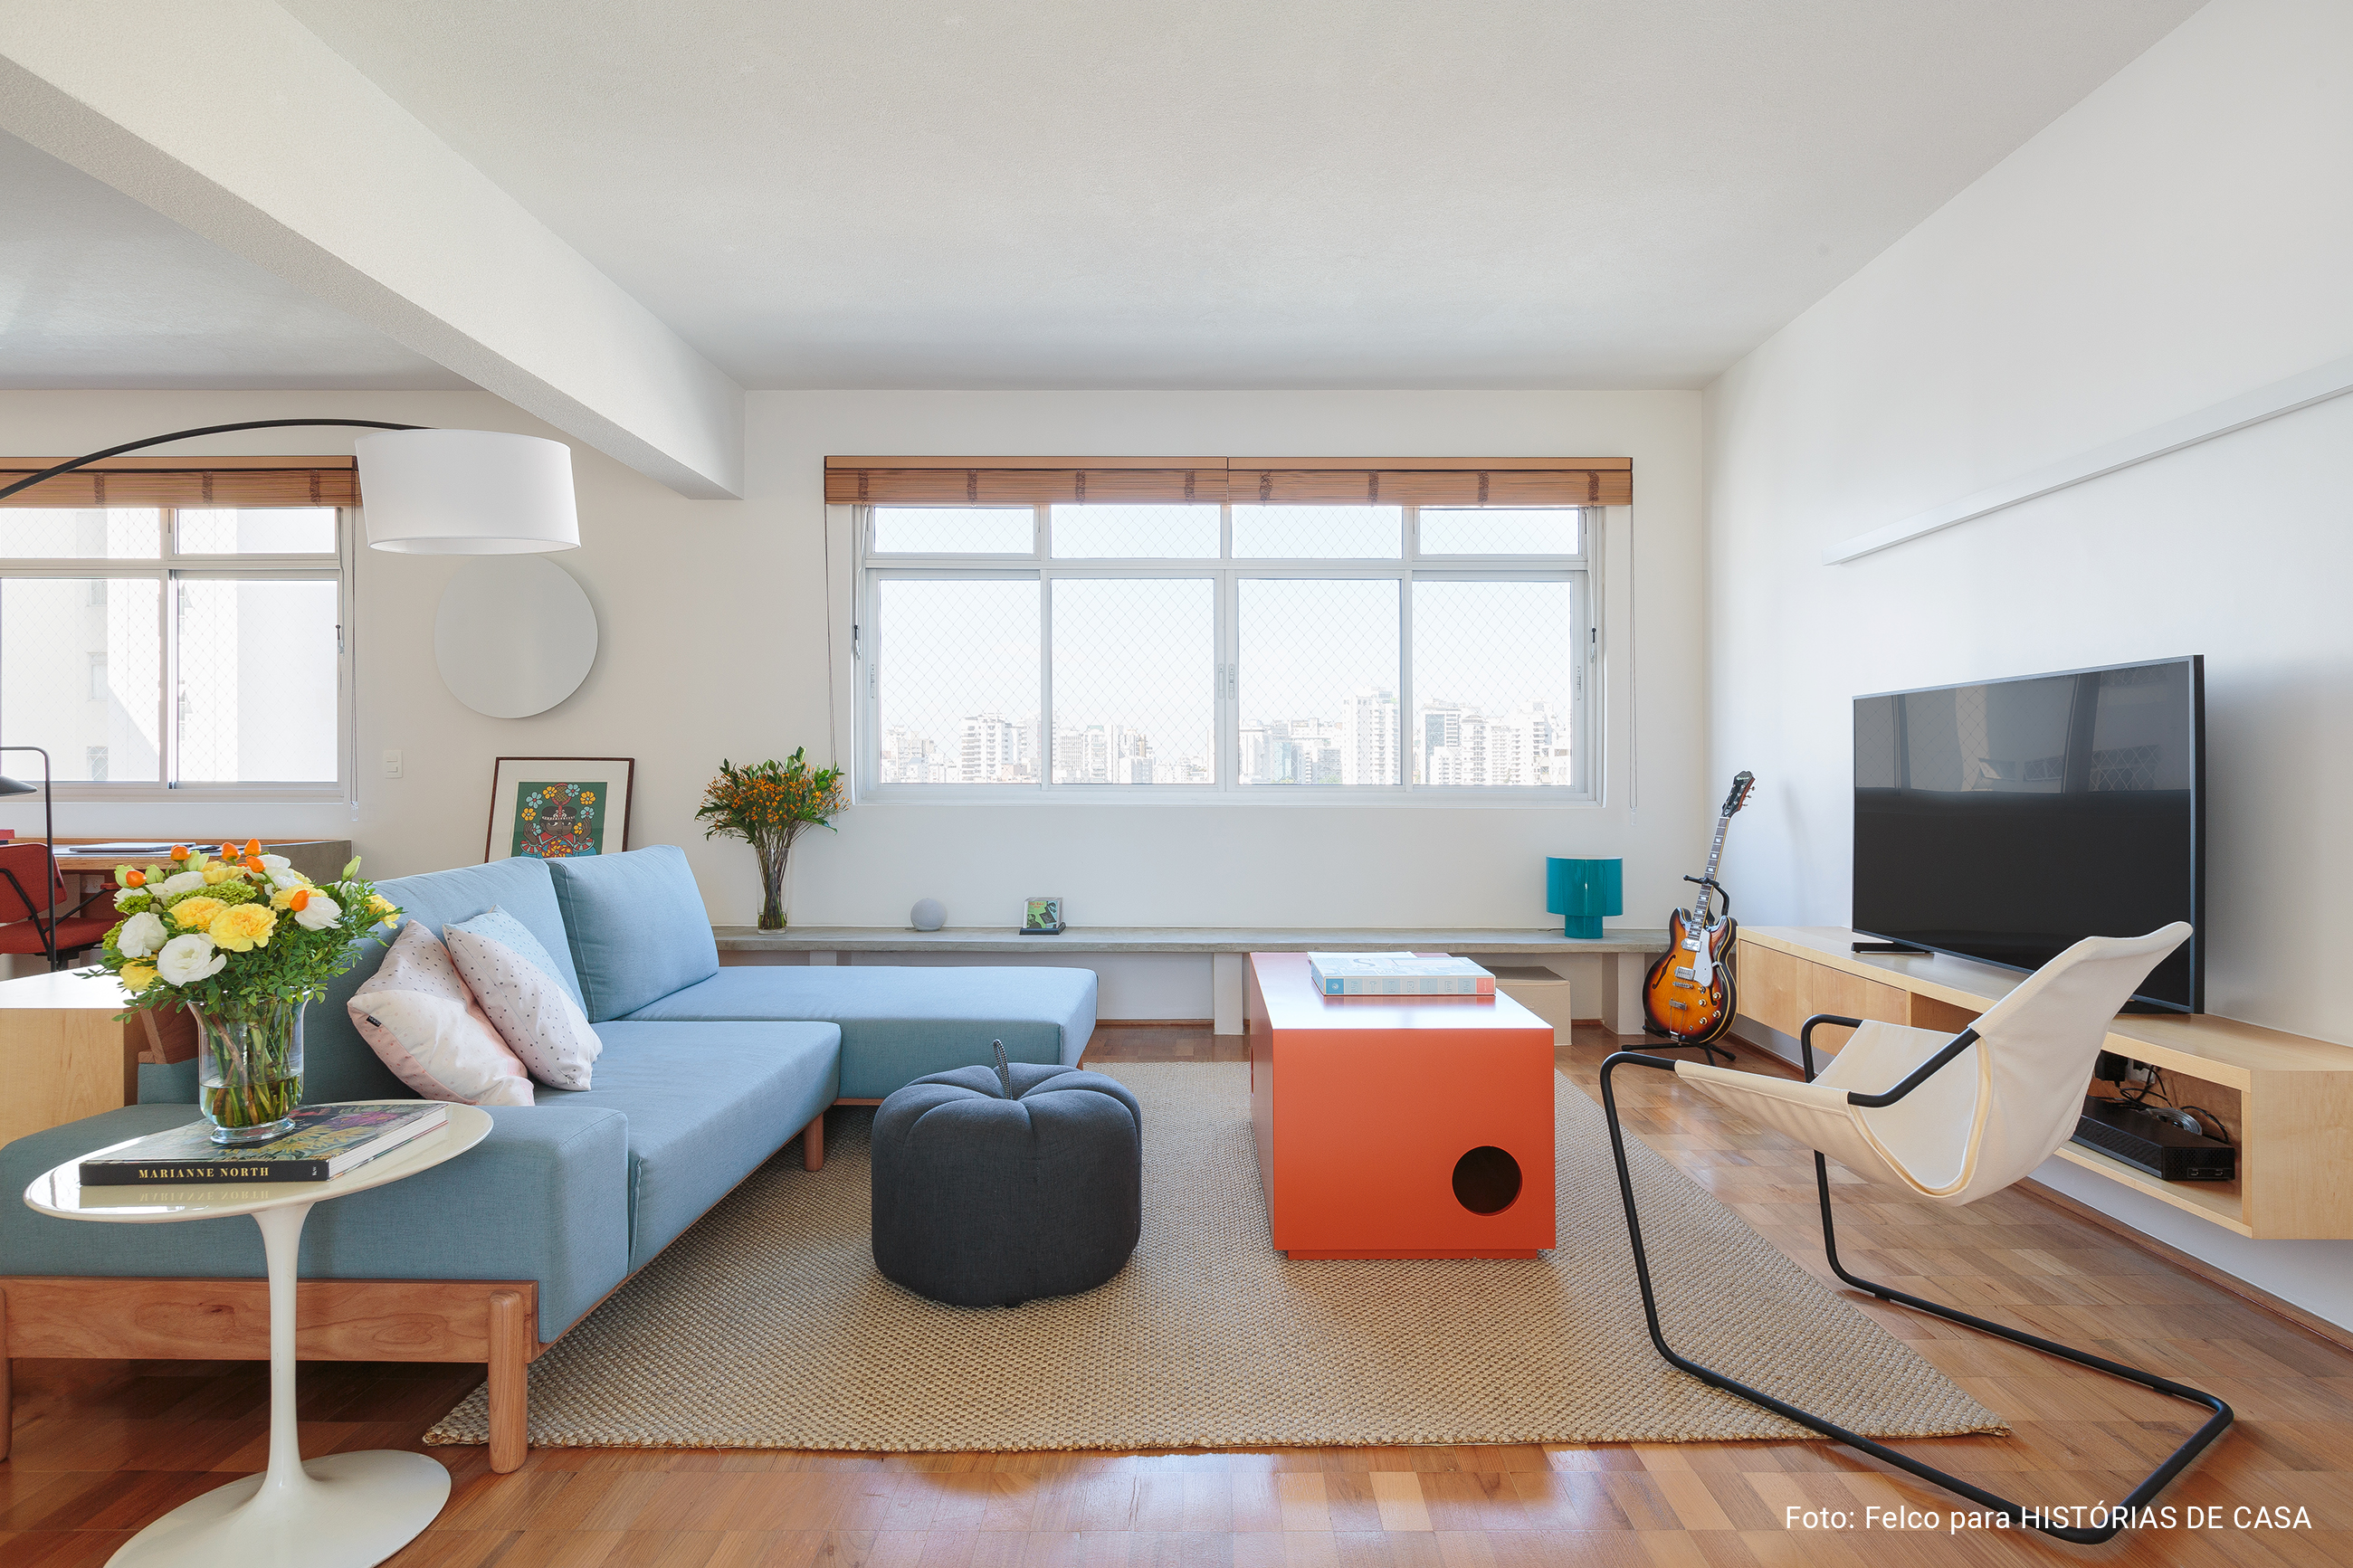 Apartamento integrado com sofá azul e marcenaria sob medida